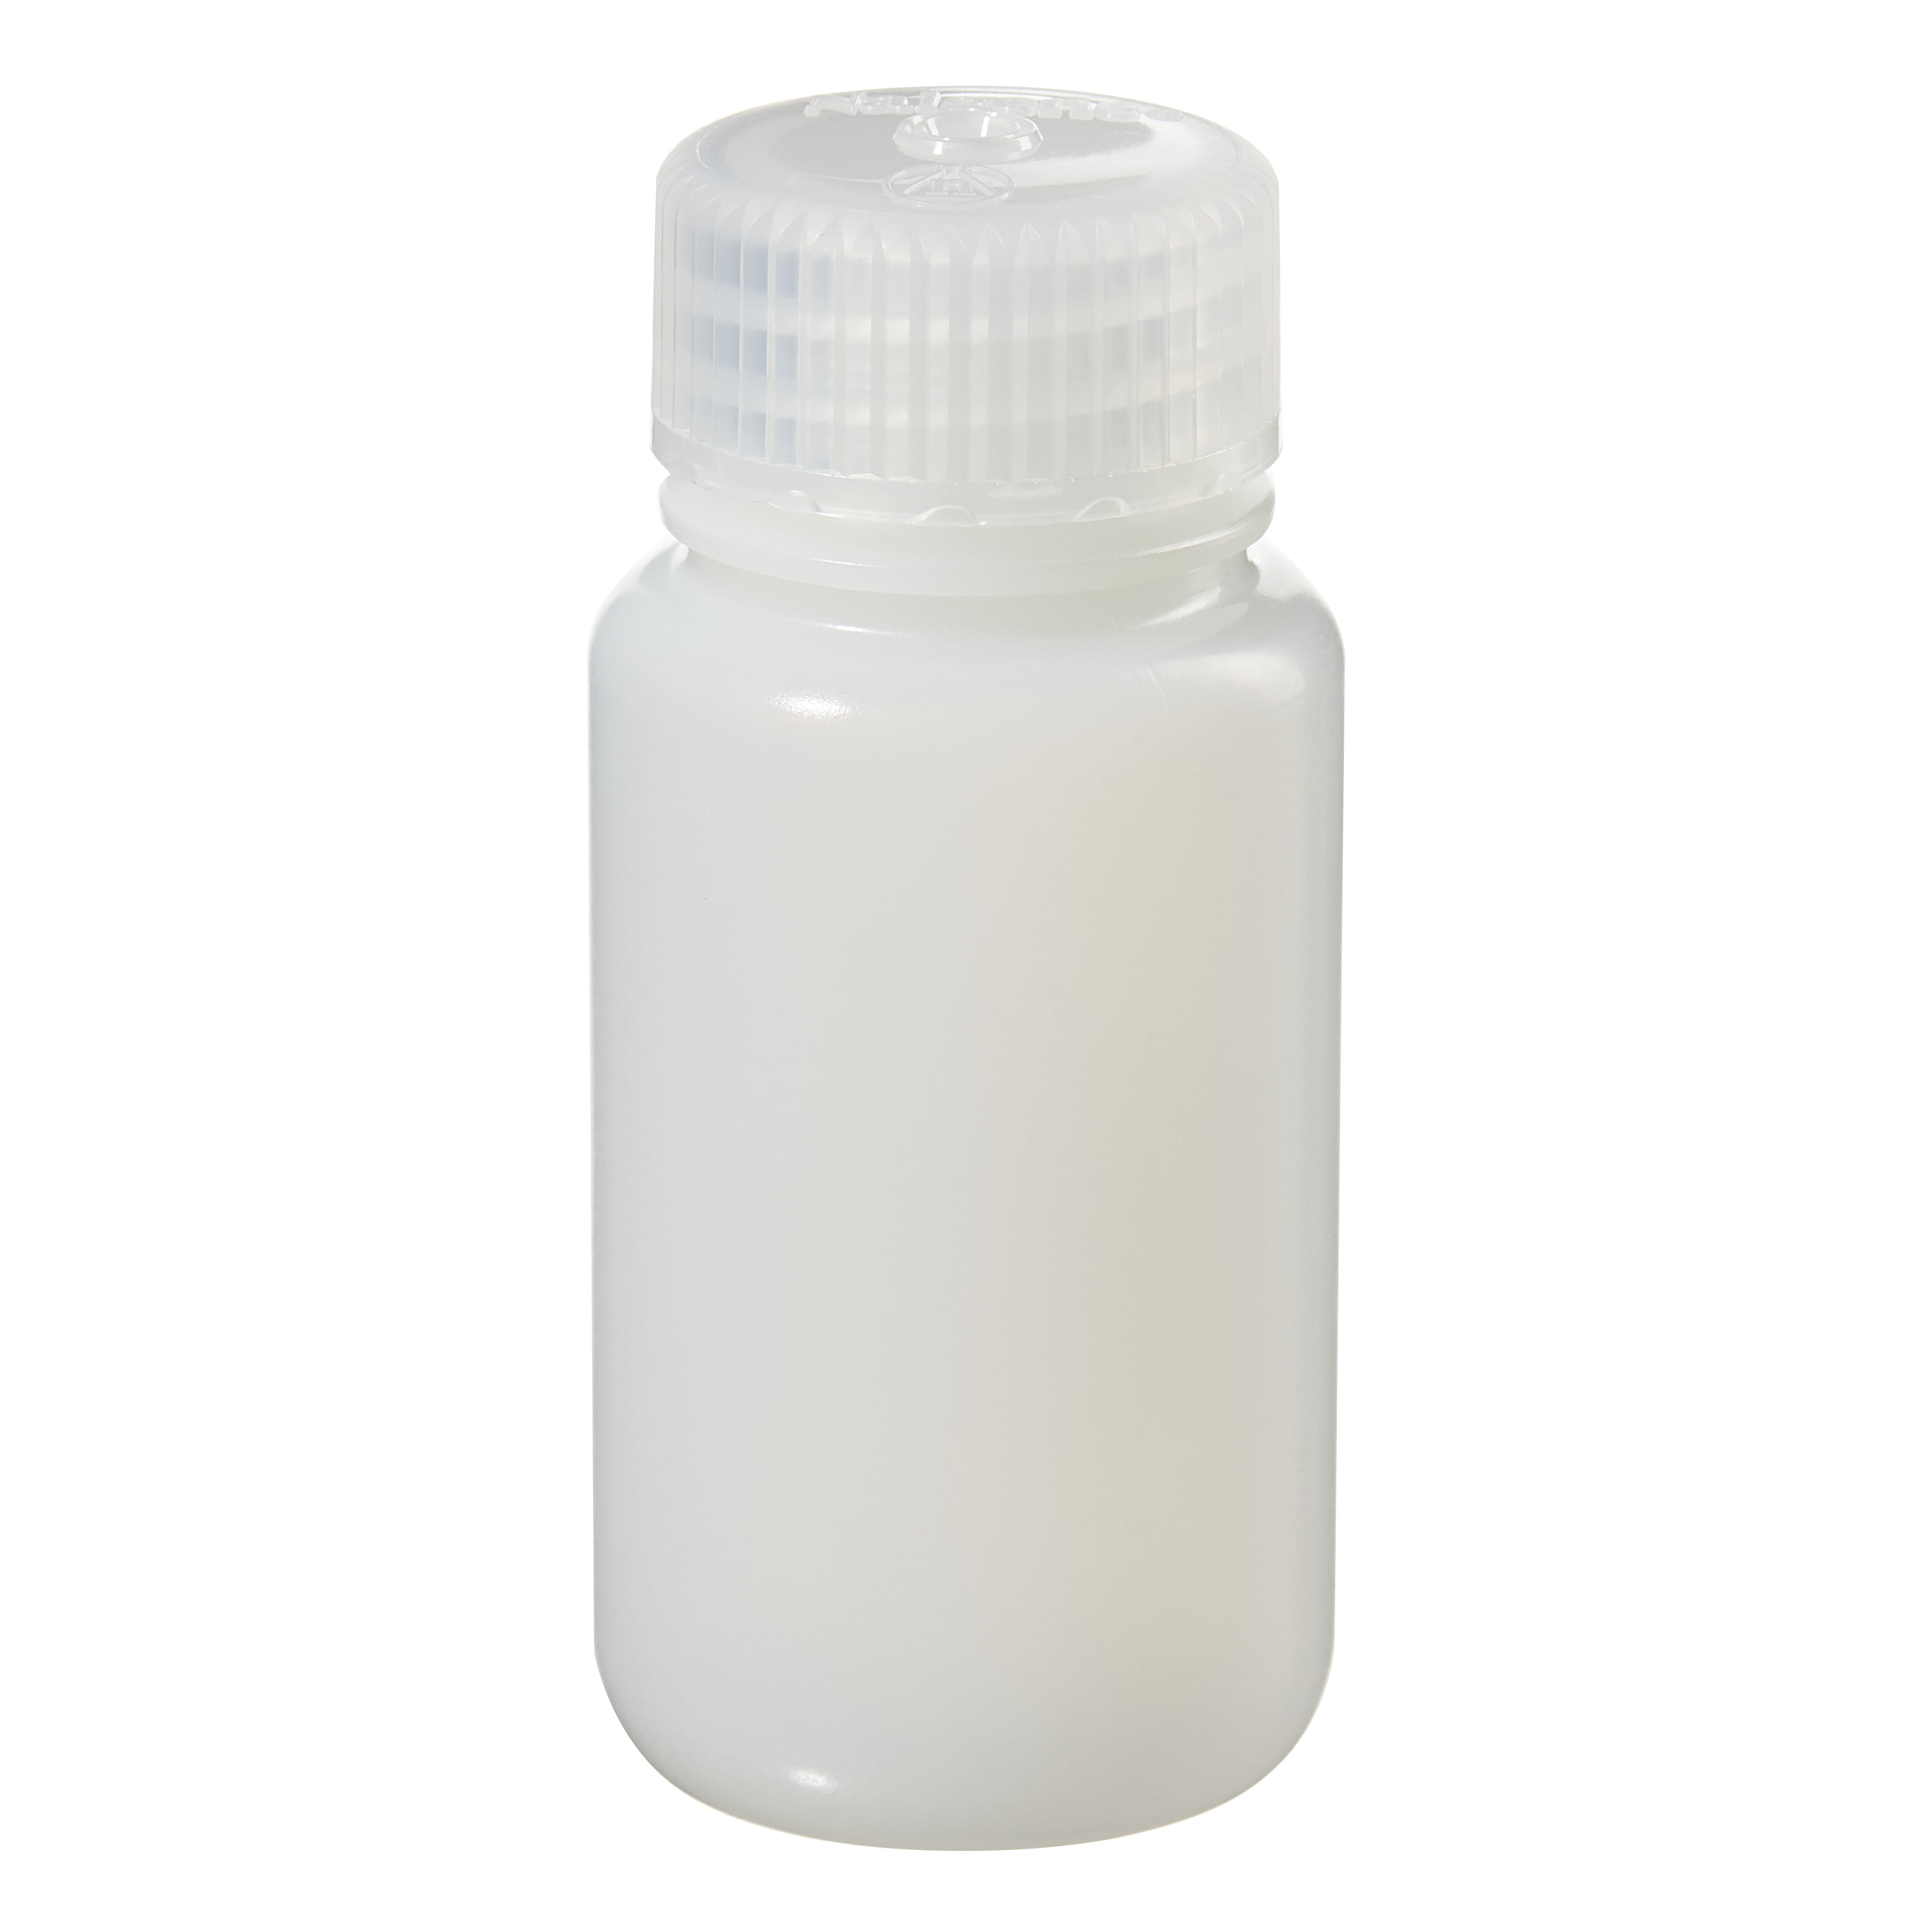 [Thermo Nalgene] 2104-0002 / 60mL Nalgene Wide-Mouth Lab Quality HDPE Bottle